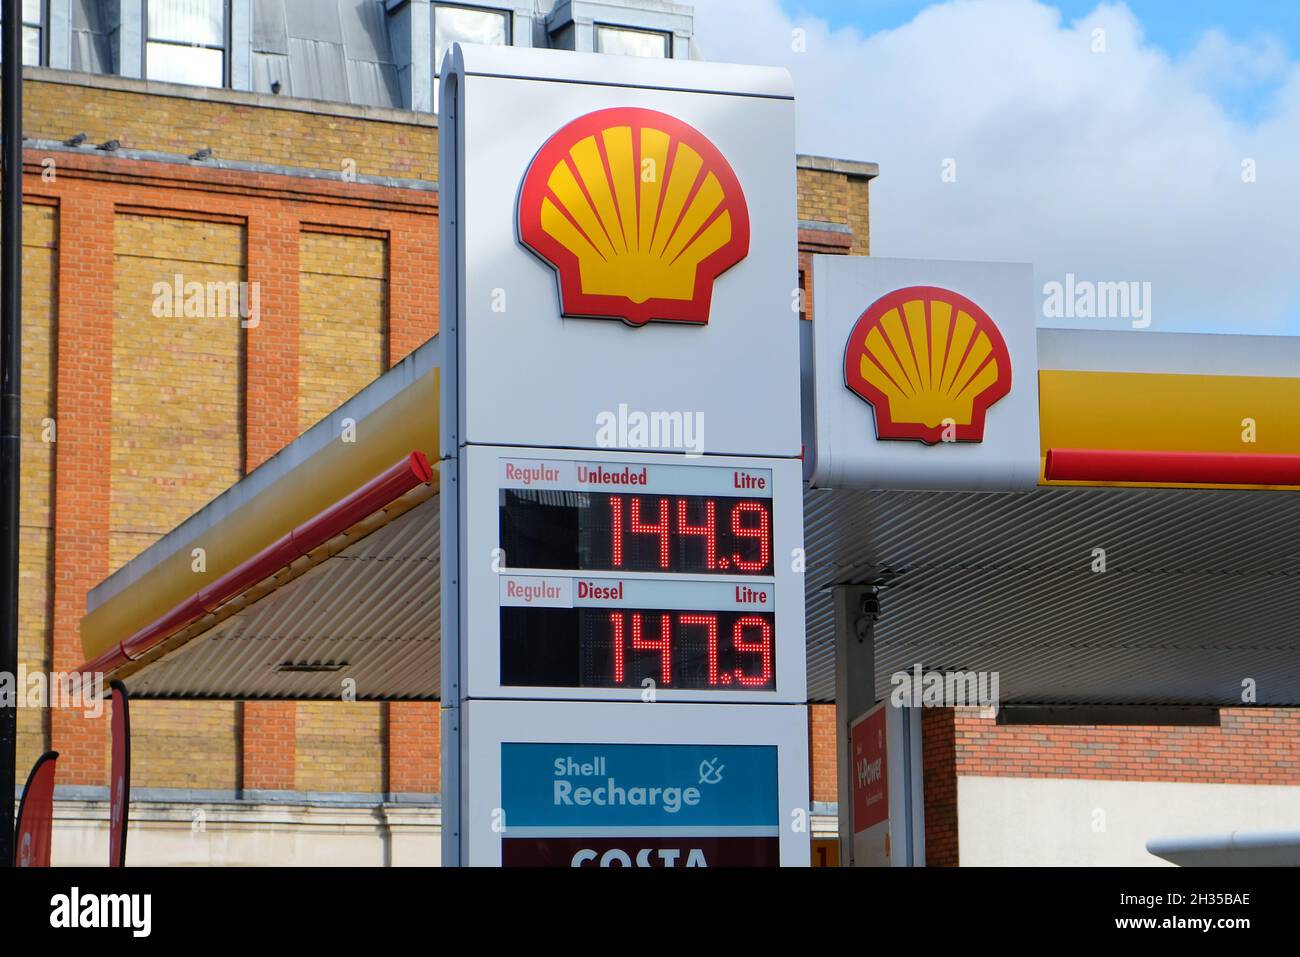 Londres, Reino Unido. Los precios de la gasolina en el Reino Unido suben a sus niveles más altos en más de nueve años después de alcanzar 142,94p en 24/10/21 y podrían ver nuevas subidas Foto de stock